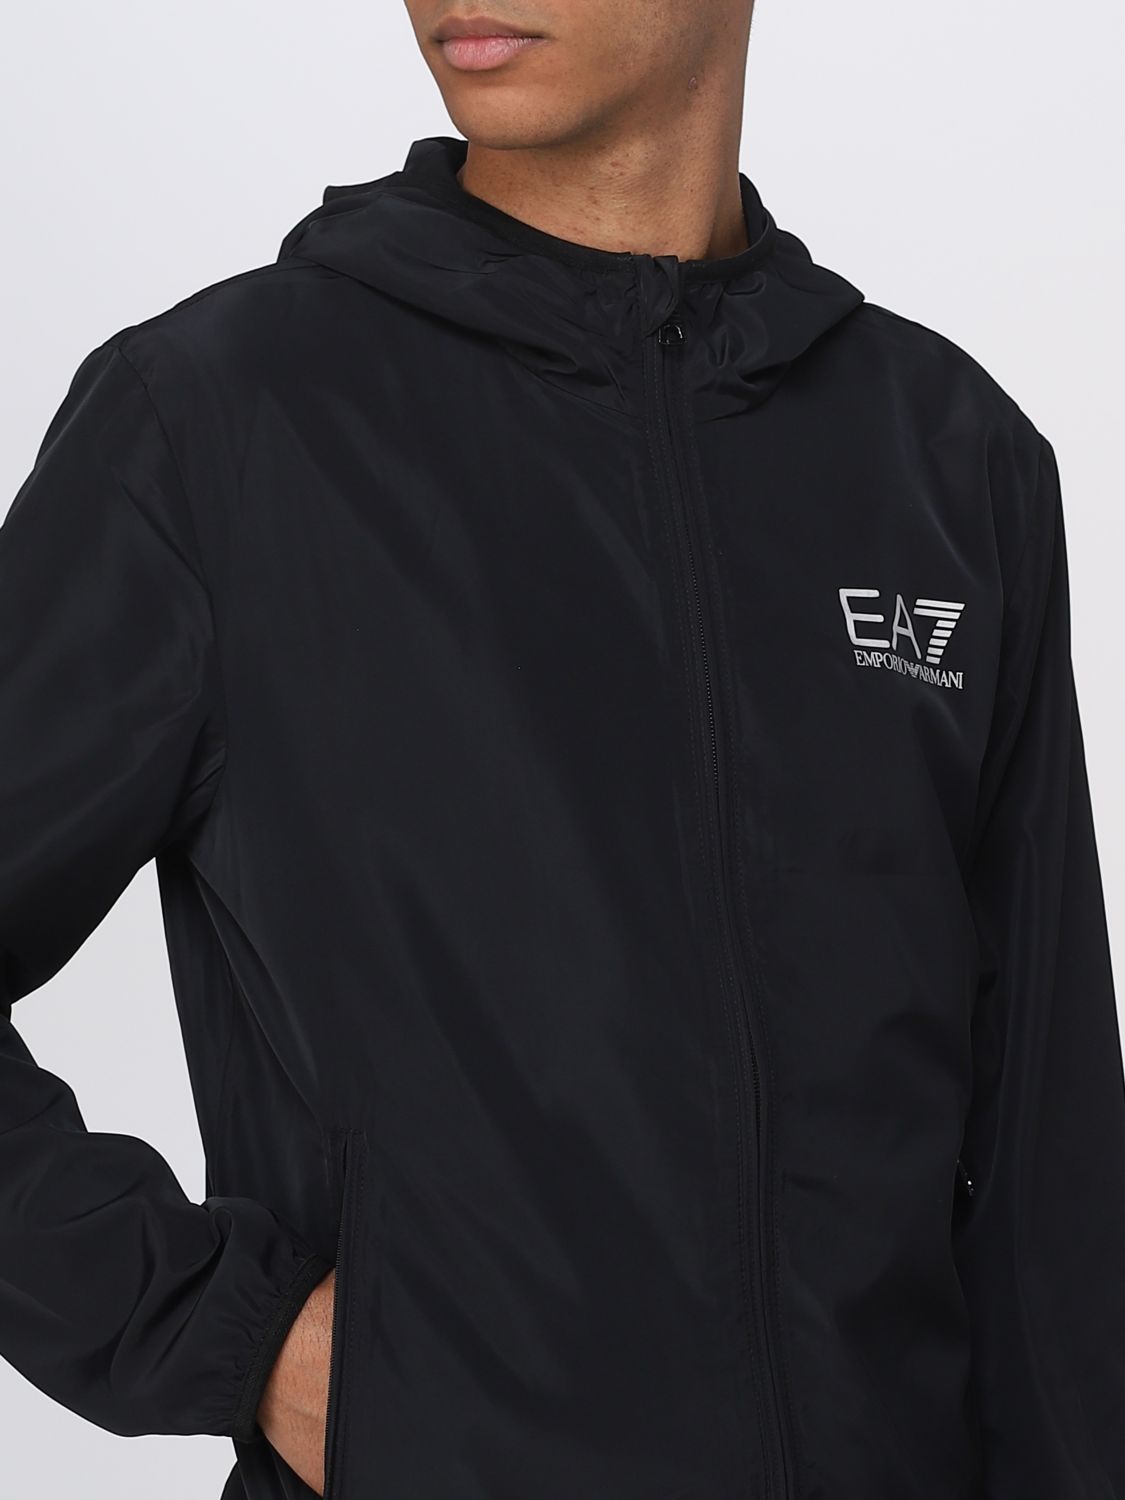 EA7: jacket for man - Black | Ea7 jacket 8NPB04PNN7Z online on GIGLIO.COM